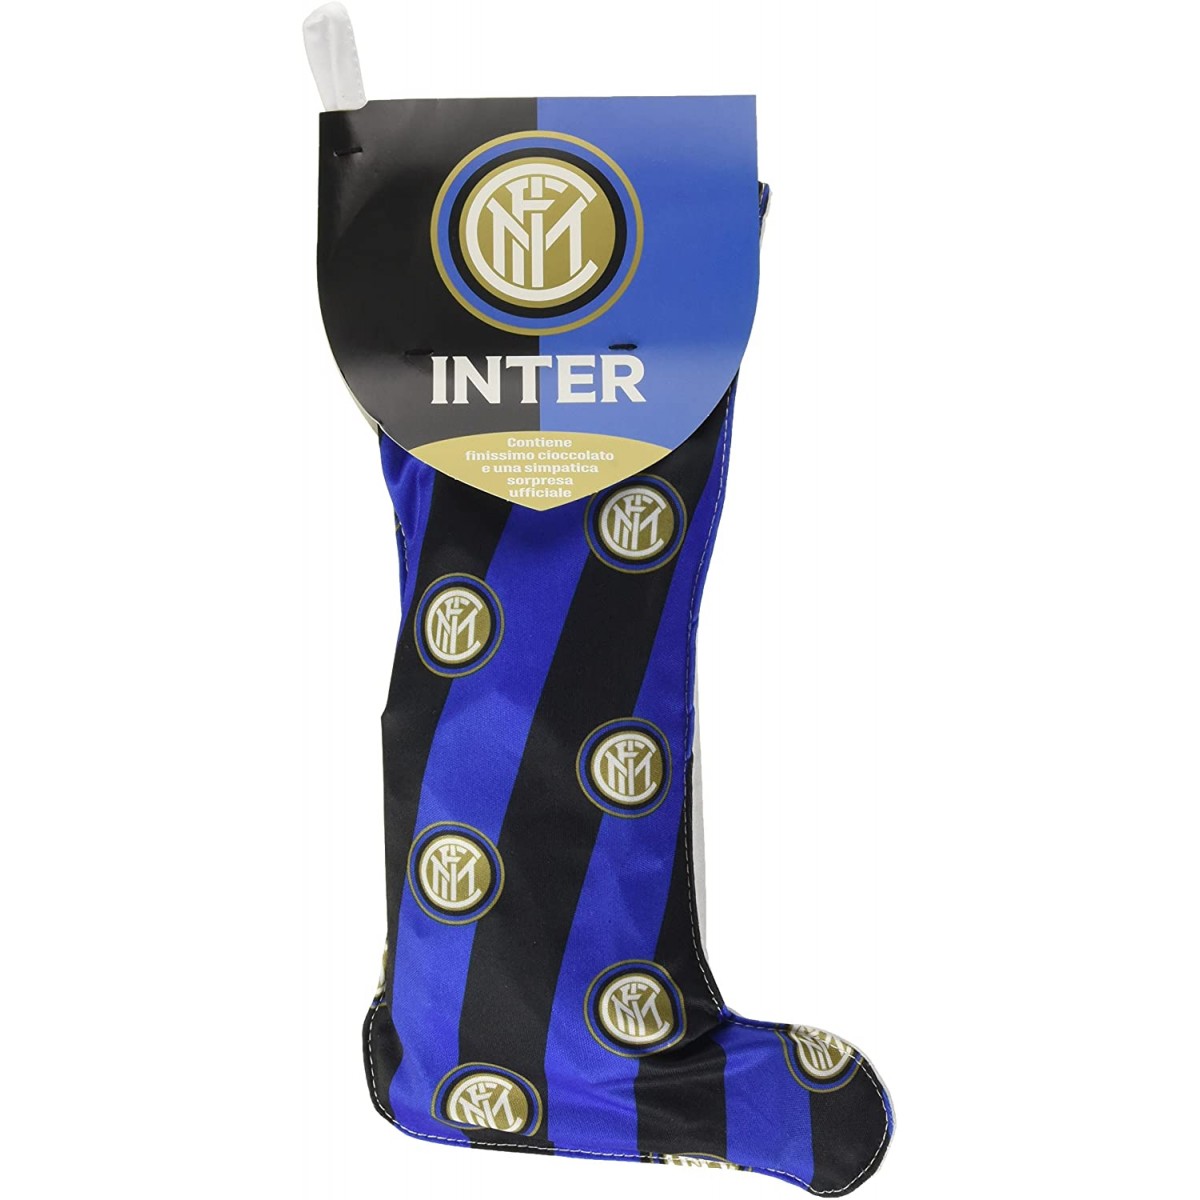 Calza Befana F.C Inter con dolci e sorpresa Ufficiale del club